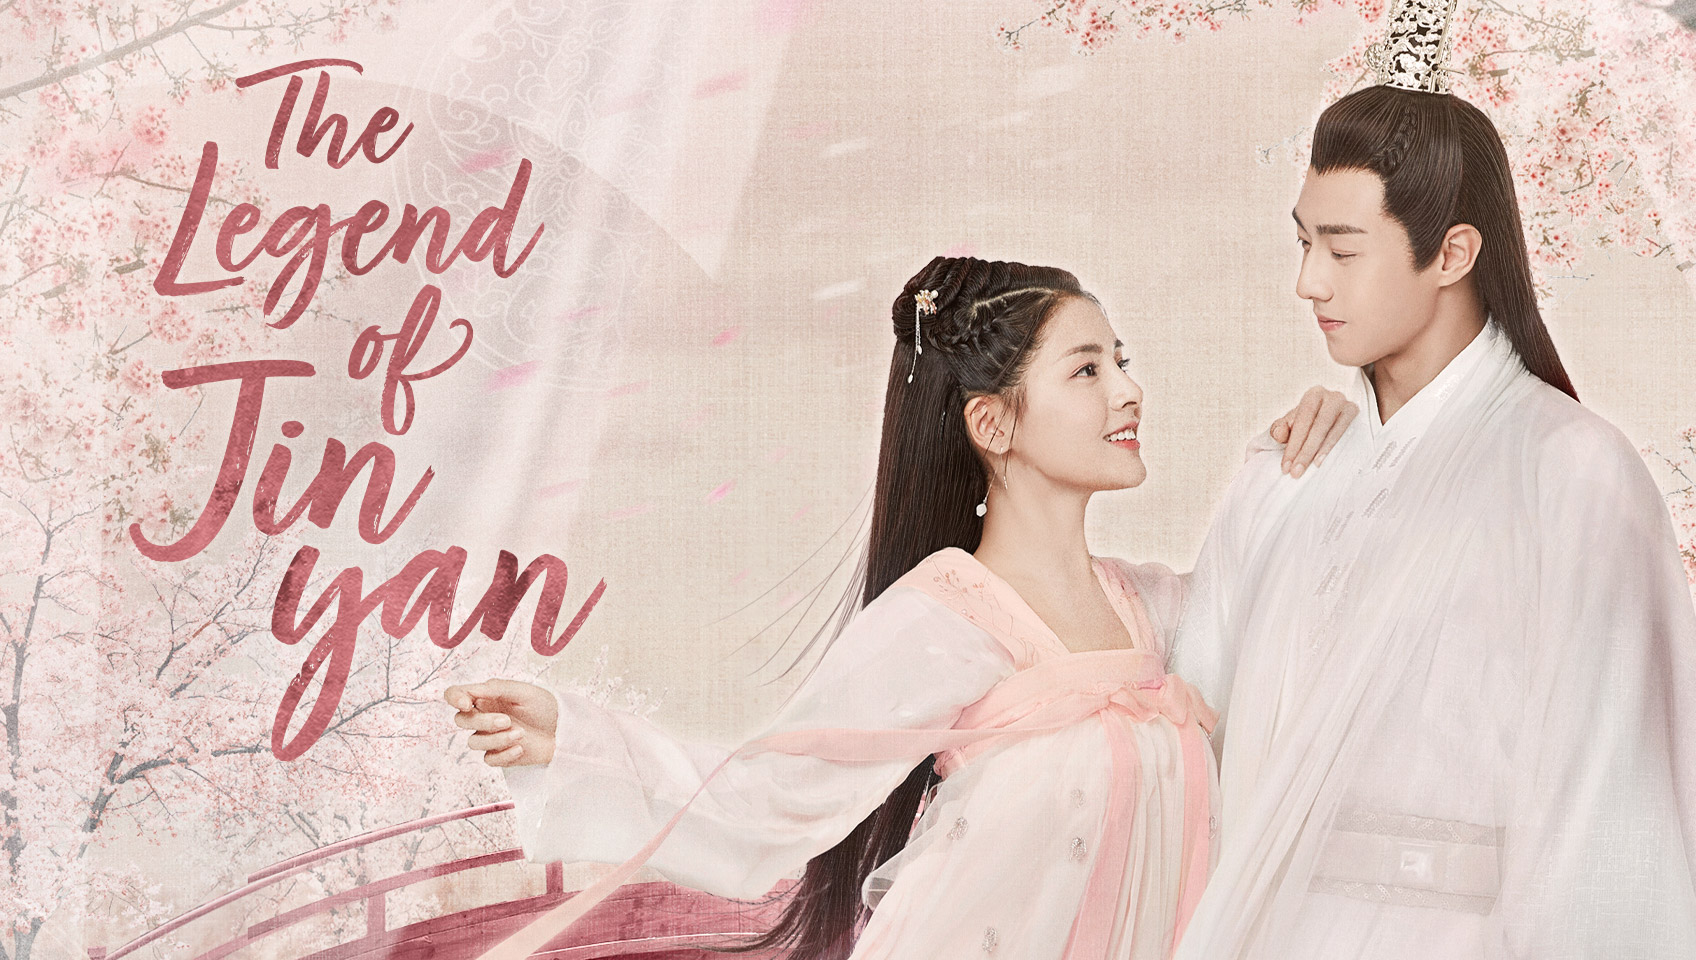 Banner Phim Cẩm Ngôn Truyện (The Legend of Jinyan)